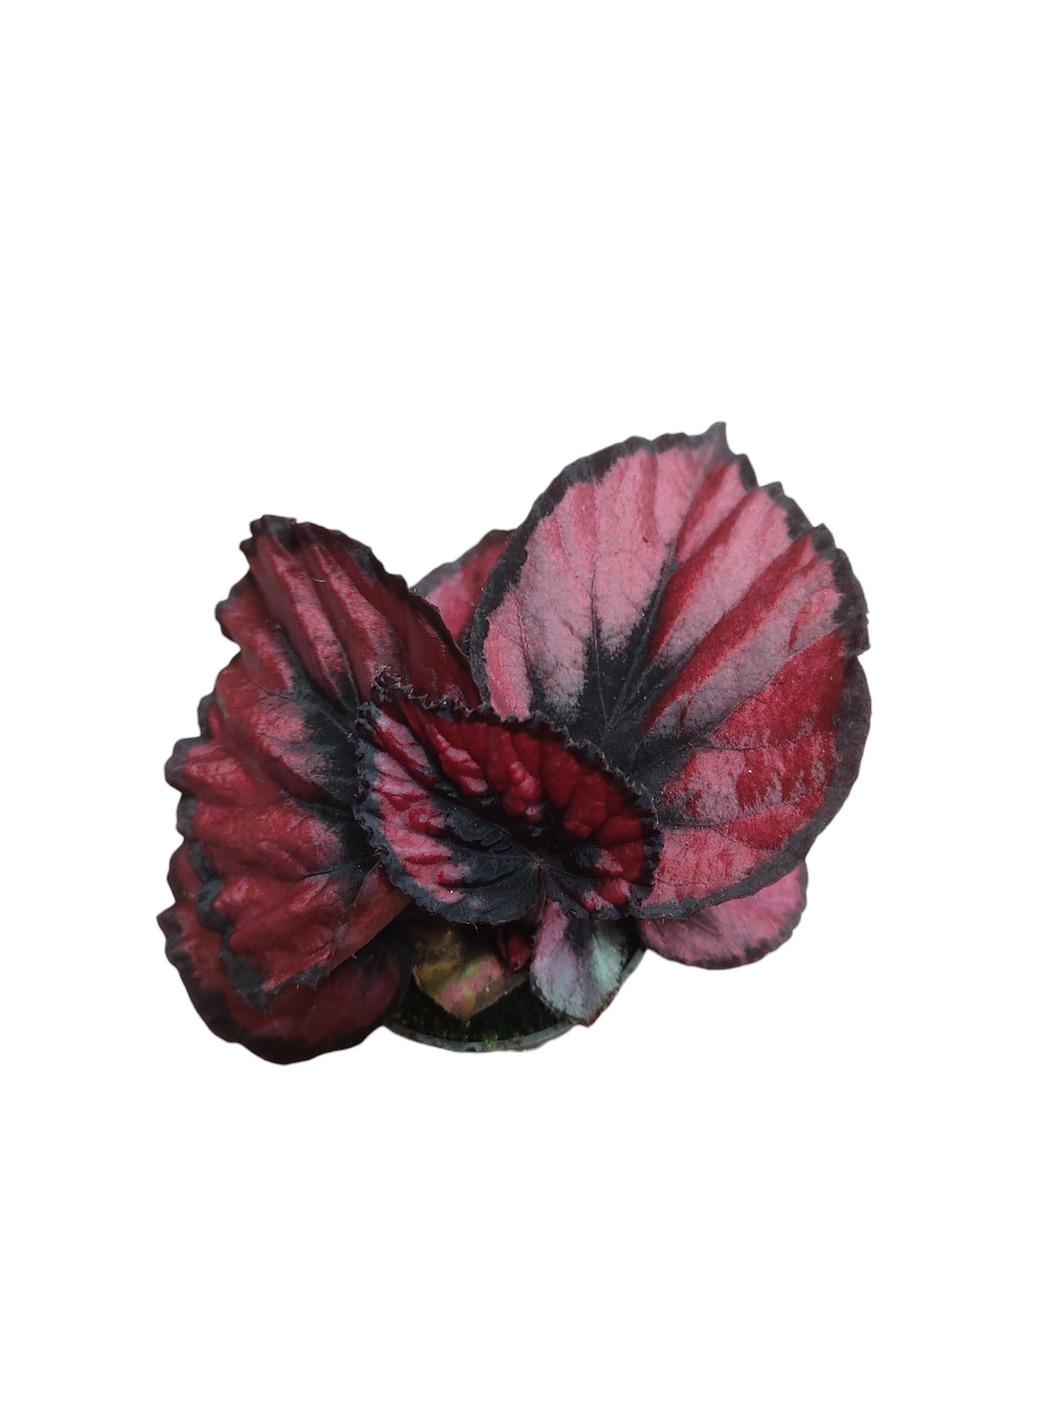 La Begonia, appartenente alla famiglia delle Begoniacee, è un genere ricco di numerose specie, accompagnate da una vasta gamma di varietà e ibridi. Alcune di queste specie catturano l'attenzione per la loro straordinaria bellezza e peculiarità del fogliame, mentre altre si distinguono per le abbondanti fioriture.